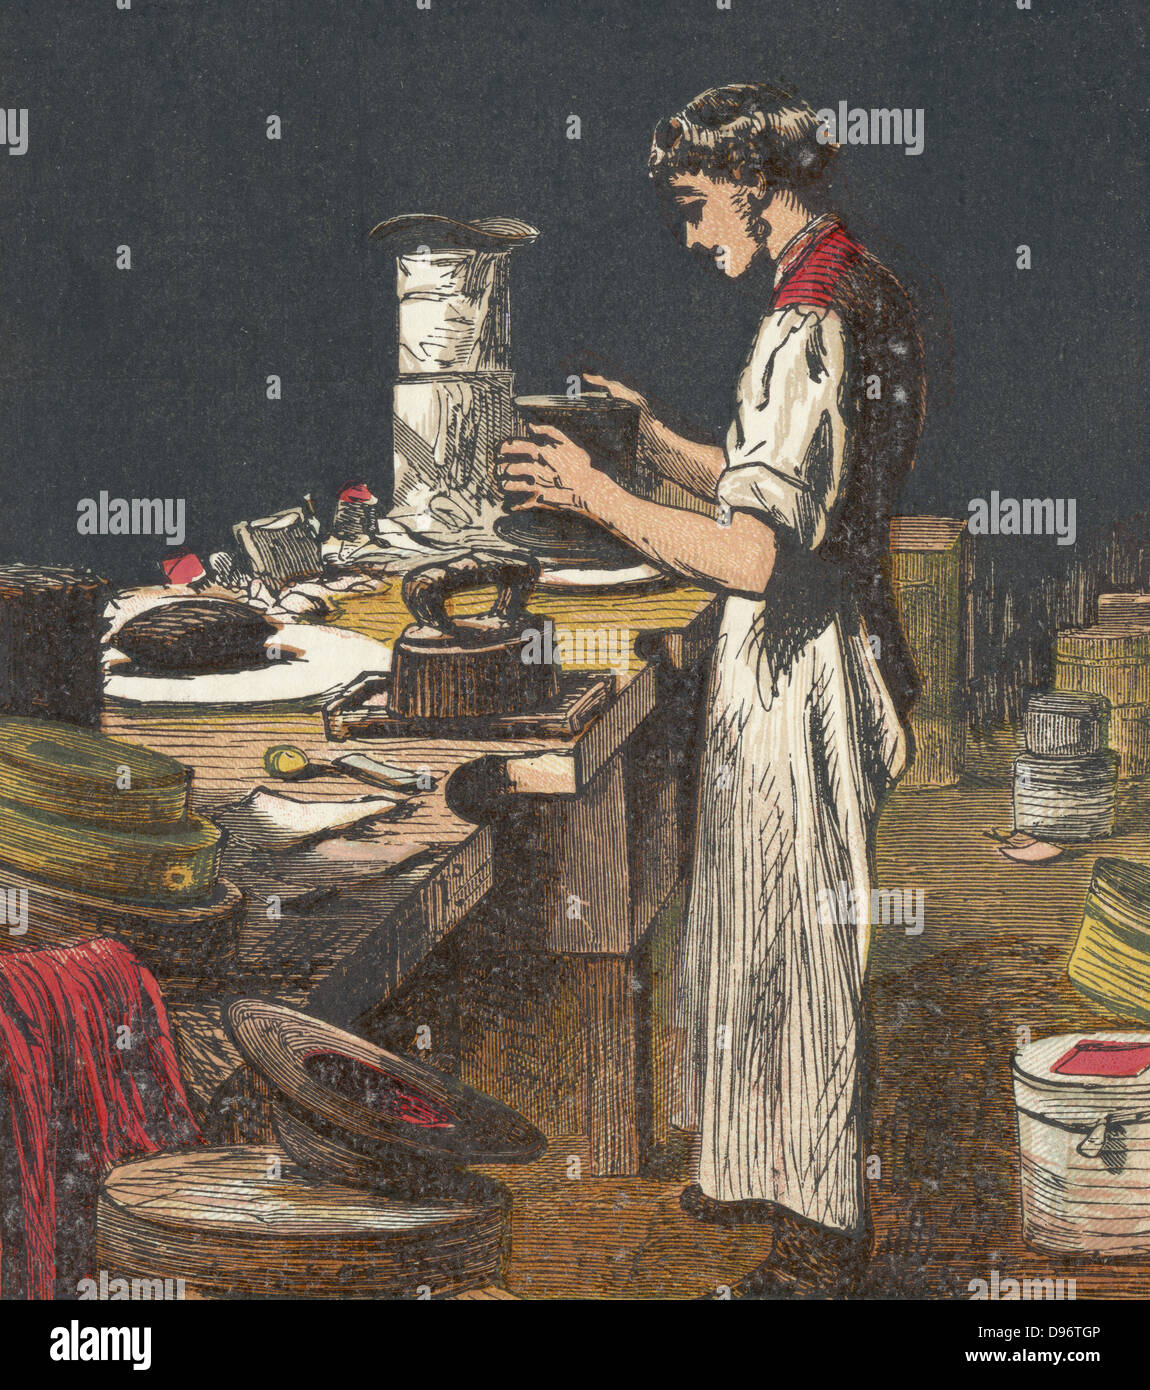 Seide Hüte. Hutmacher ist schwarzen Seide auf Hut Rahmen setzen. Im Zentrum Hintergrund sind zwei fertige Spitze Hüte in Silberpapier zum Schutz abgedeckt. Farblitho von einem englischen Kinderbuch veröffentlicht 1867. Stockfoto